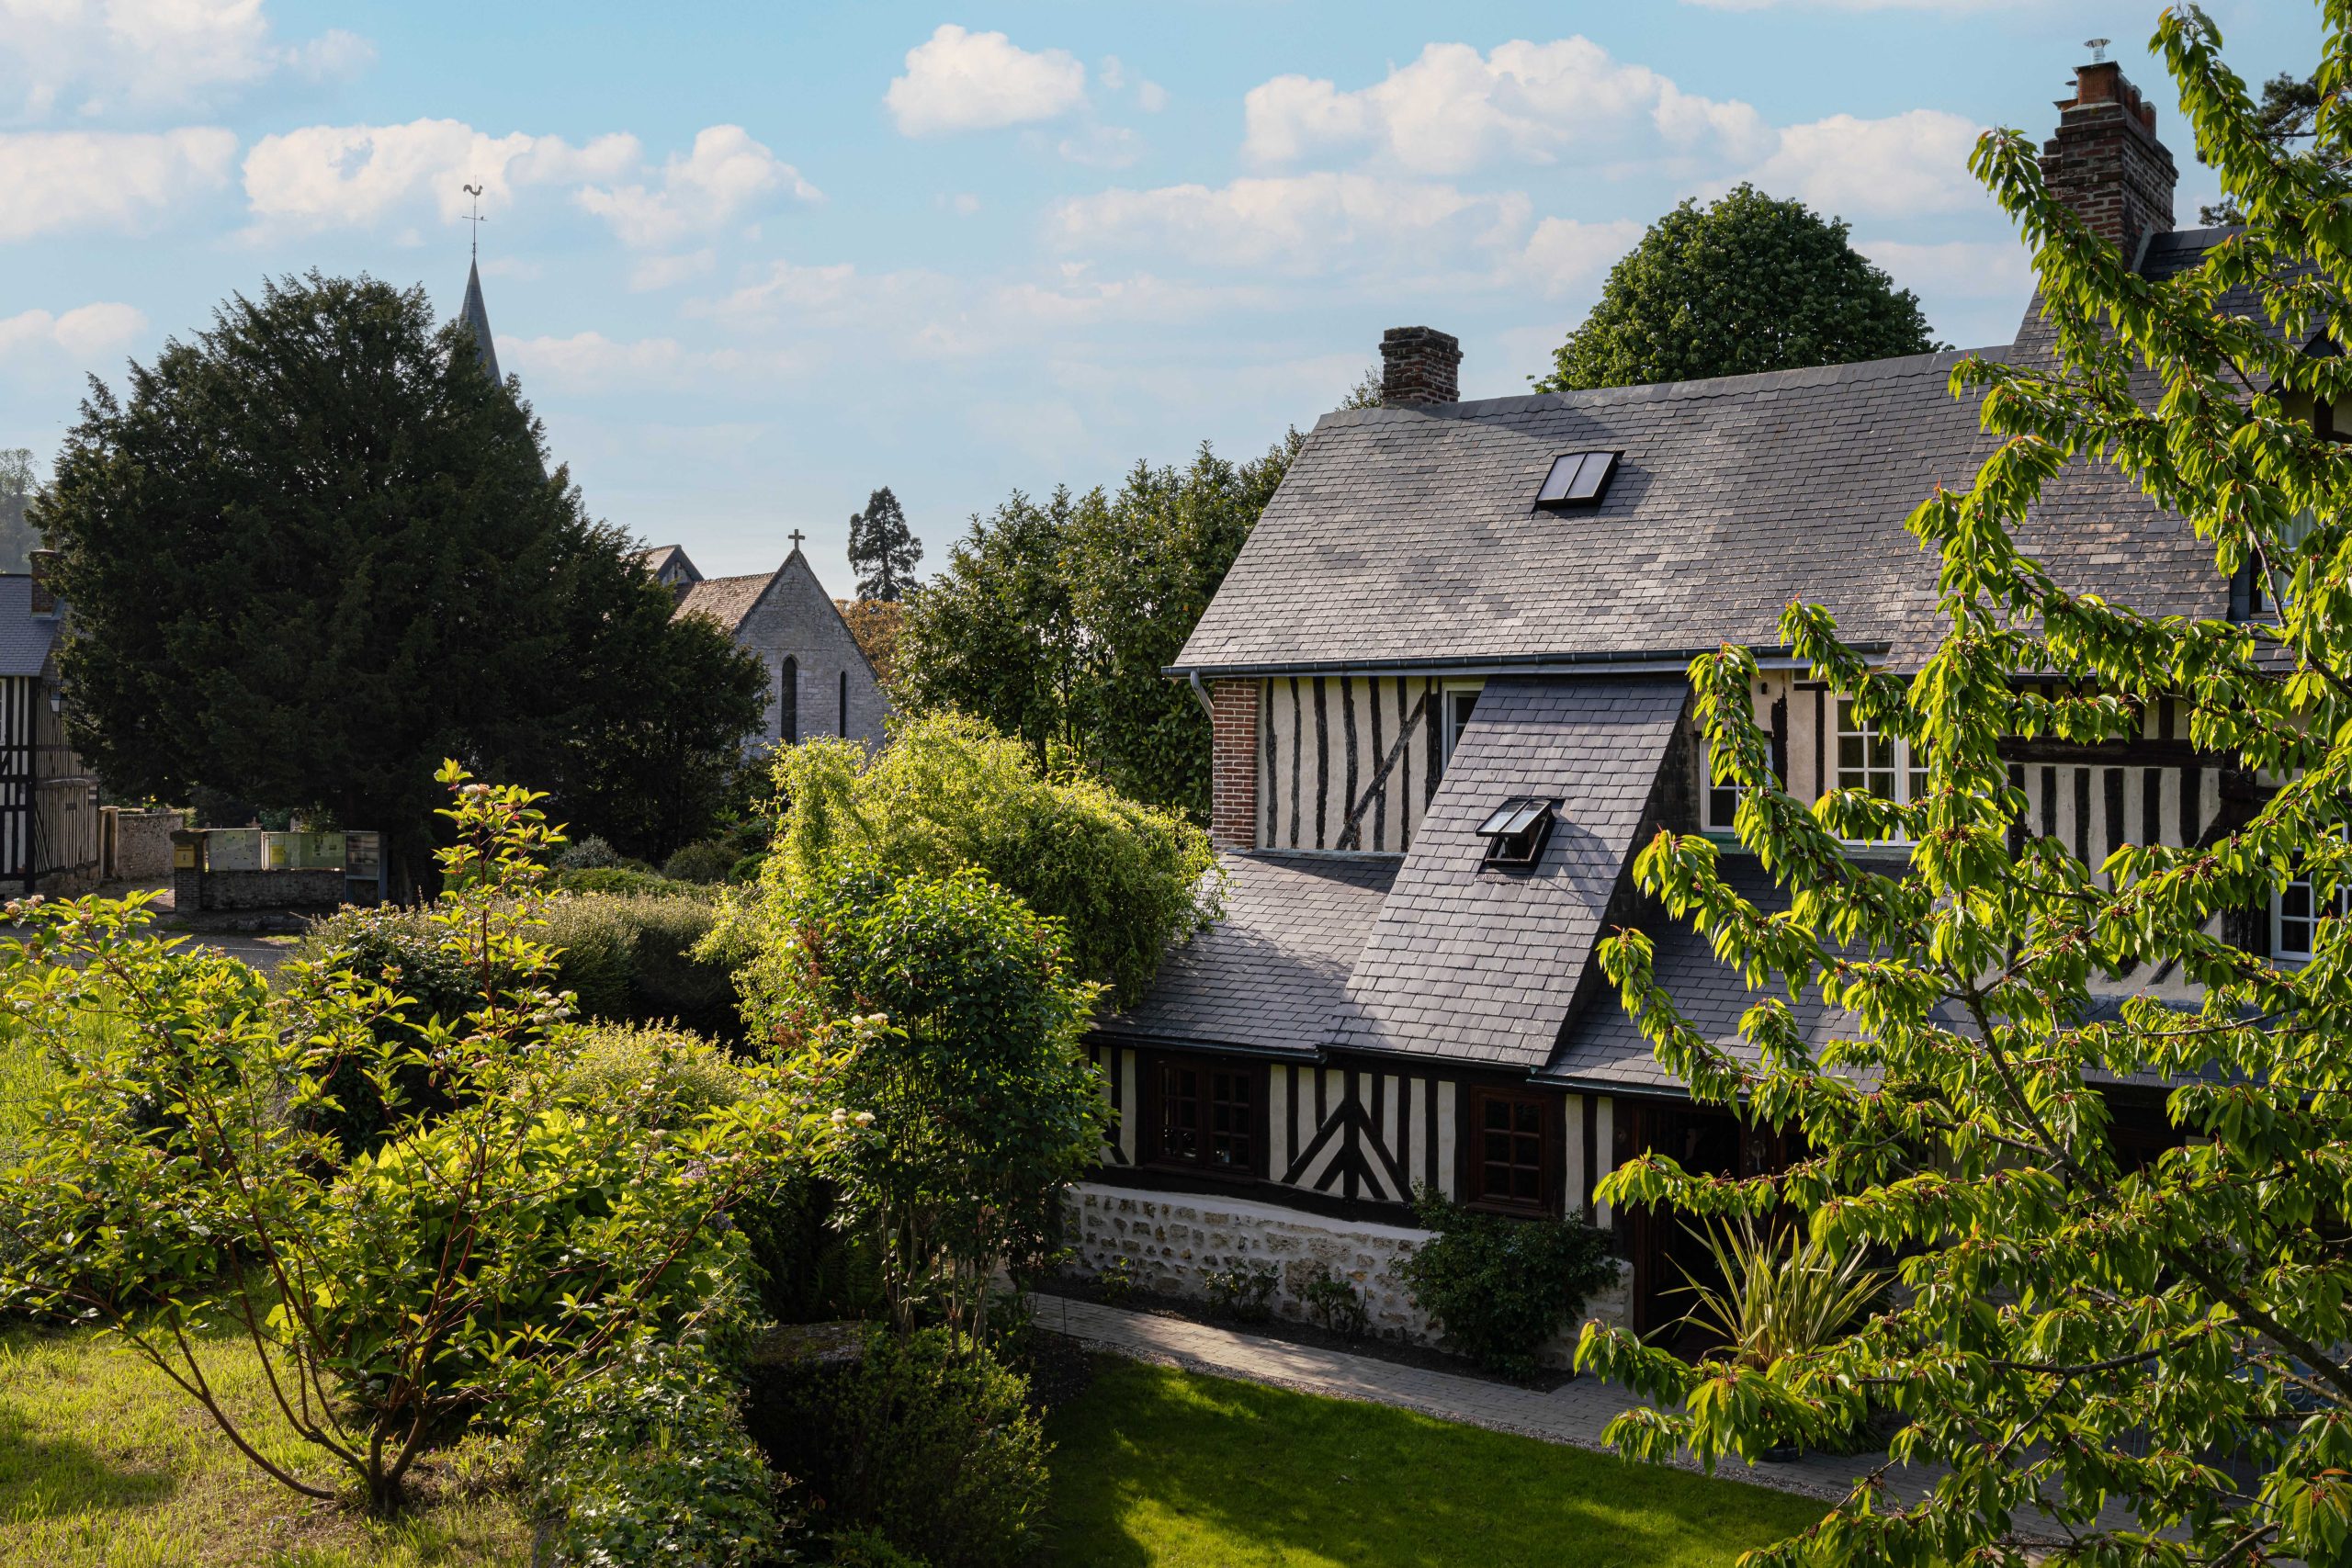 casa de pedra com telhado de ardósia, rodeada de vegetação - casa de campo honfleur